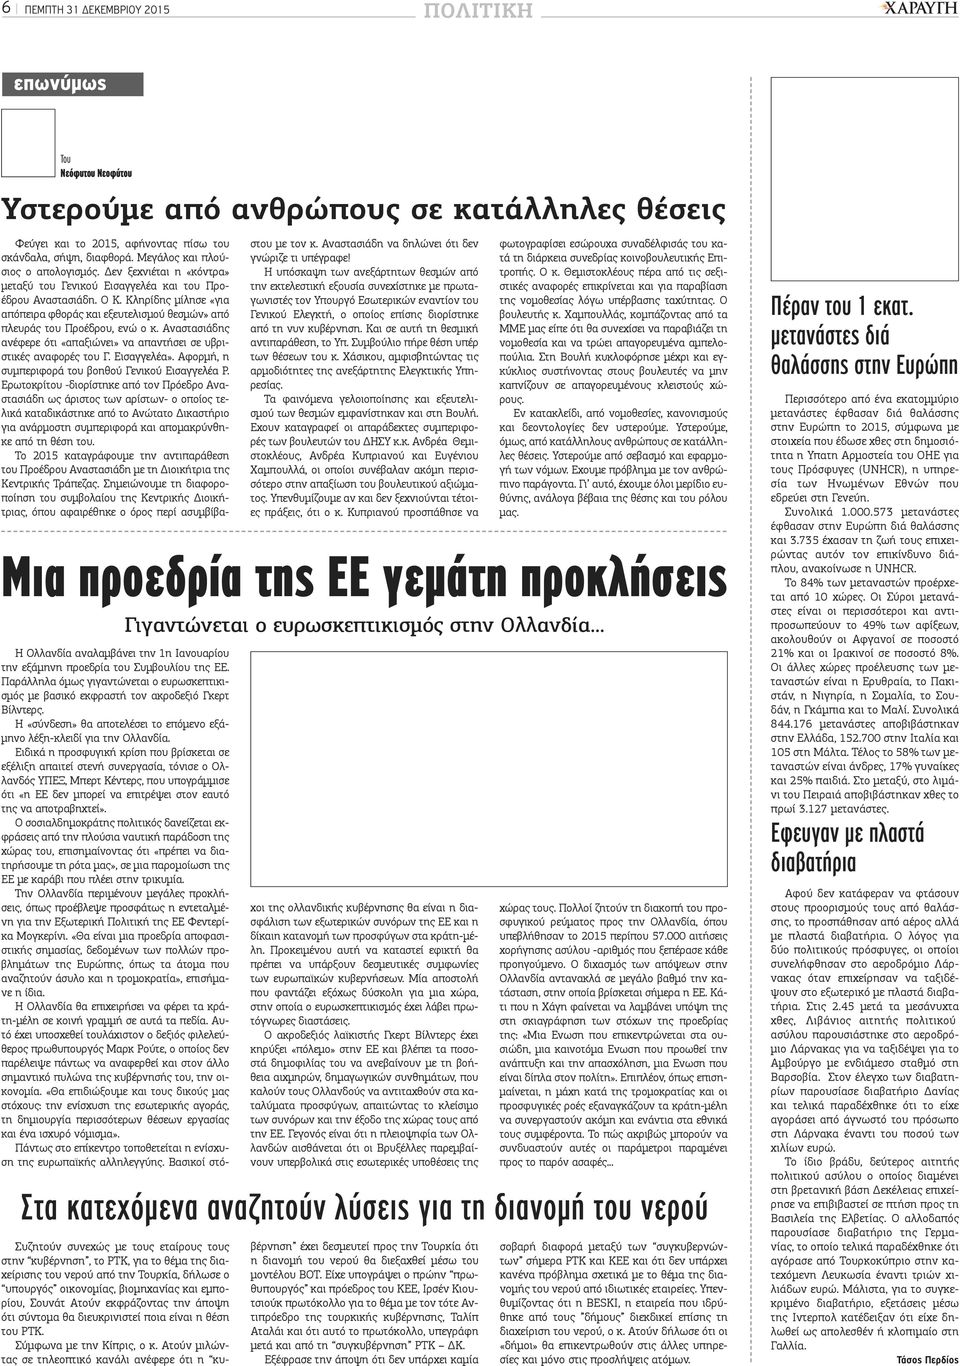 Κληρίδης μίλησε «για απόπειρα φθοράς και εξευτελισμού θεσμών» από πλευράς του Προέδρου, ενώ ο κ. Αναστασιάδης ανέφερε ότι «απαξιώνει» να απαντήσει σε υβριστικές αναφορές του Γ. Εισαγγελέα».